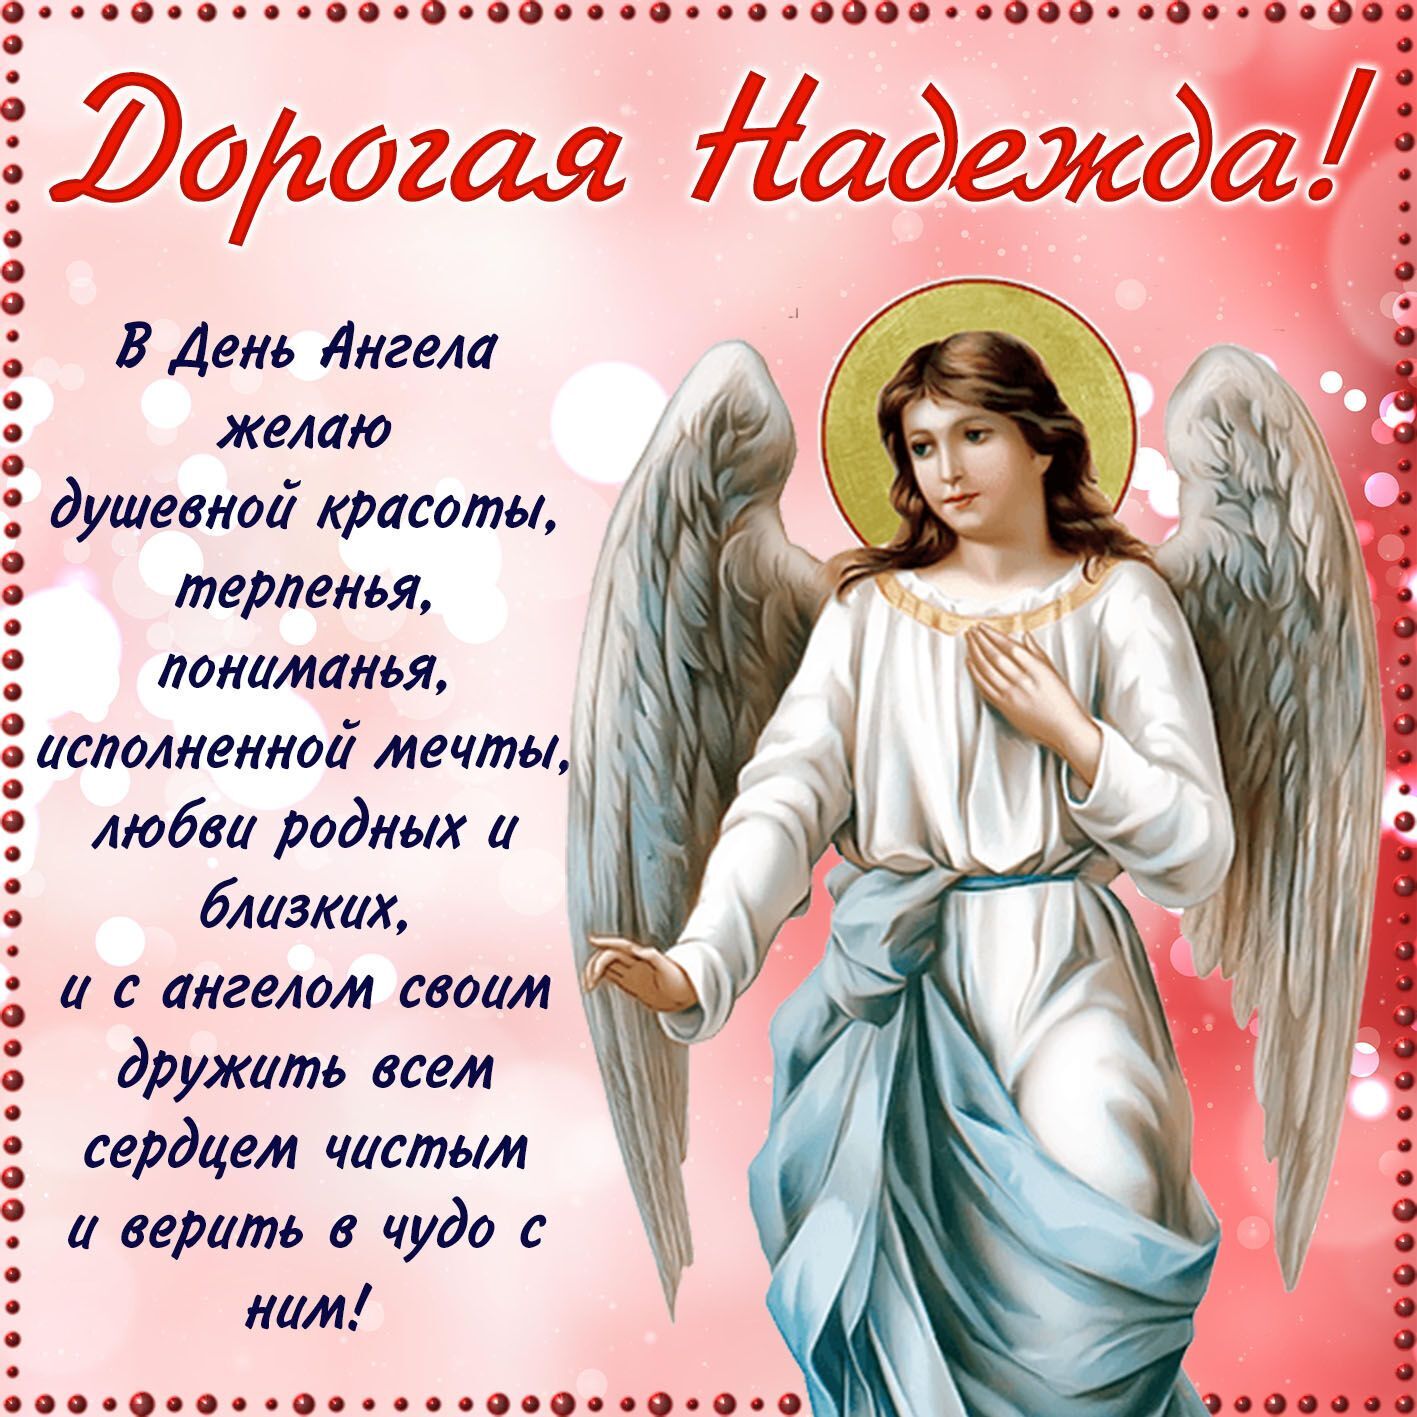 Пожелания в день ангела Надежды